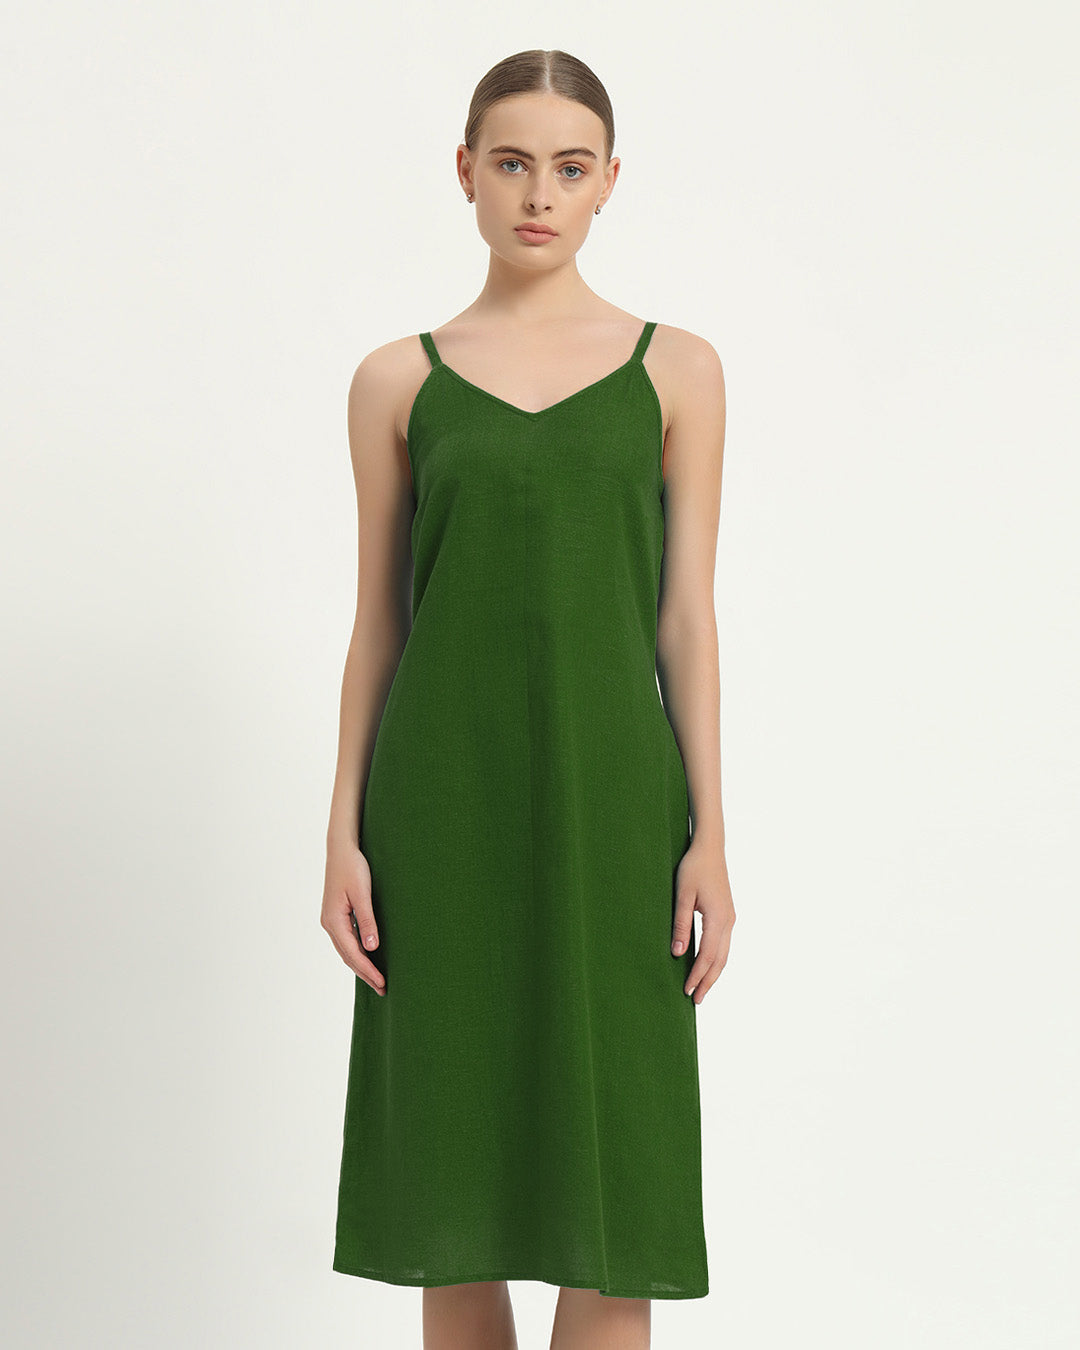 The Seesen Emerald Cotton Dress